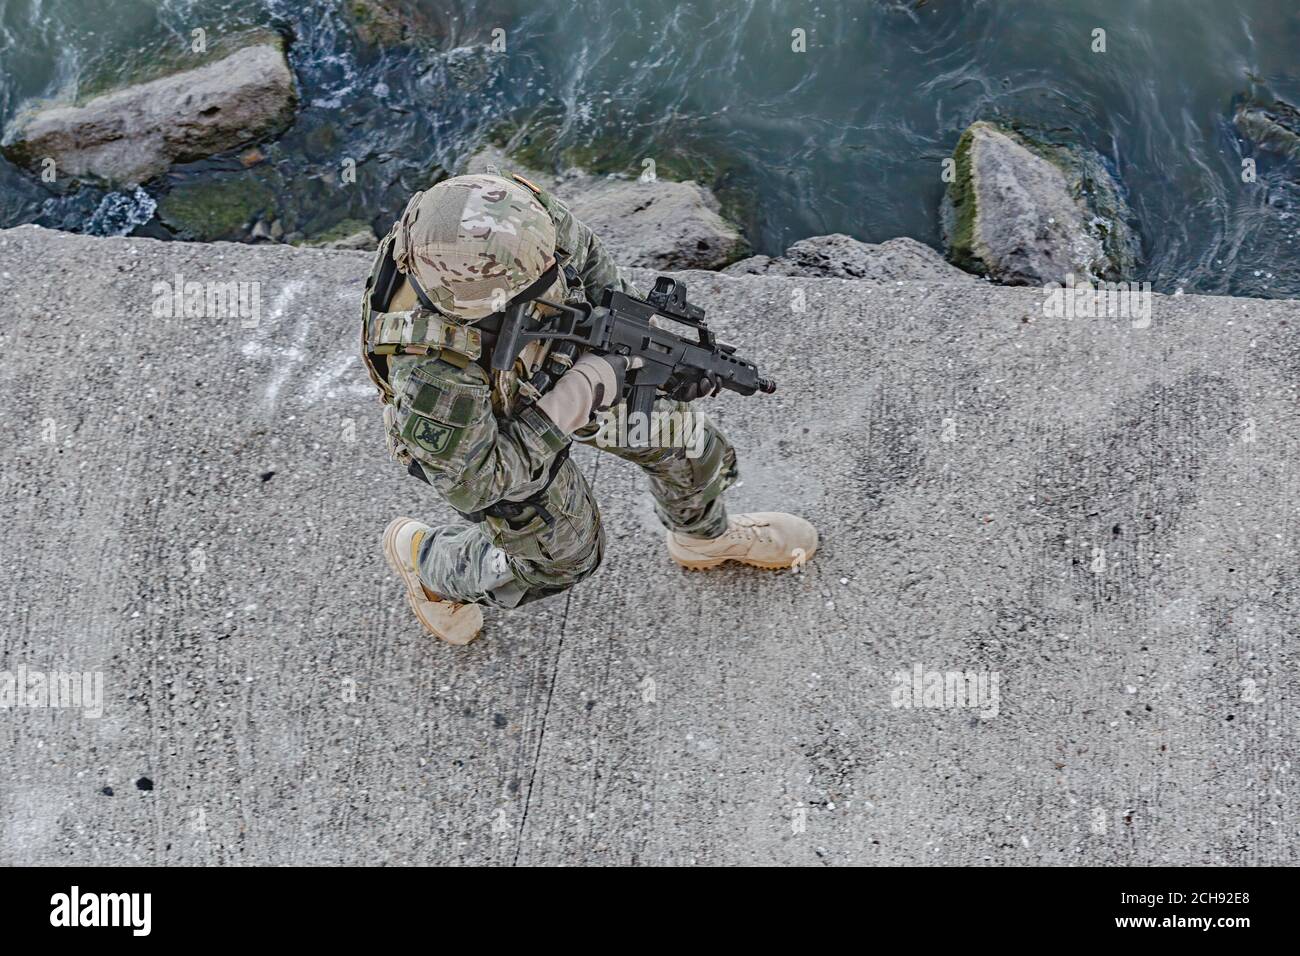 Armeesoldat in Kampfuniformen mit Sturmgewehr. Militärische Ausrüstung, Armee Helm und militärische Aktion. Stockfoto